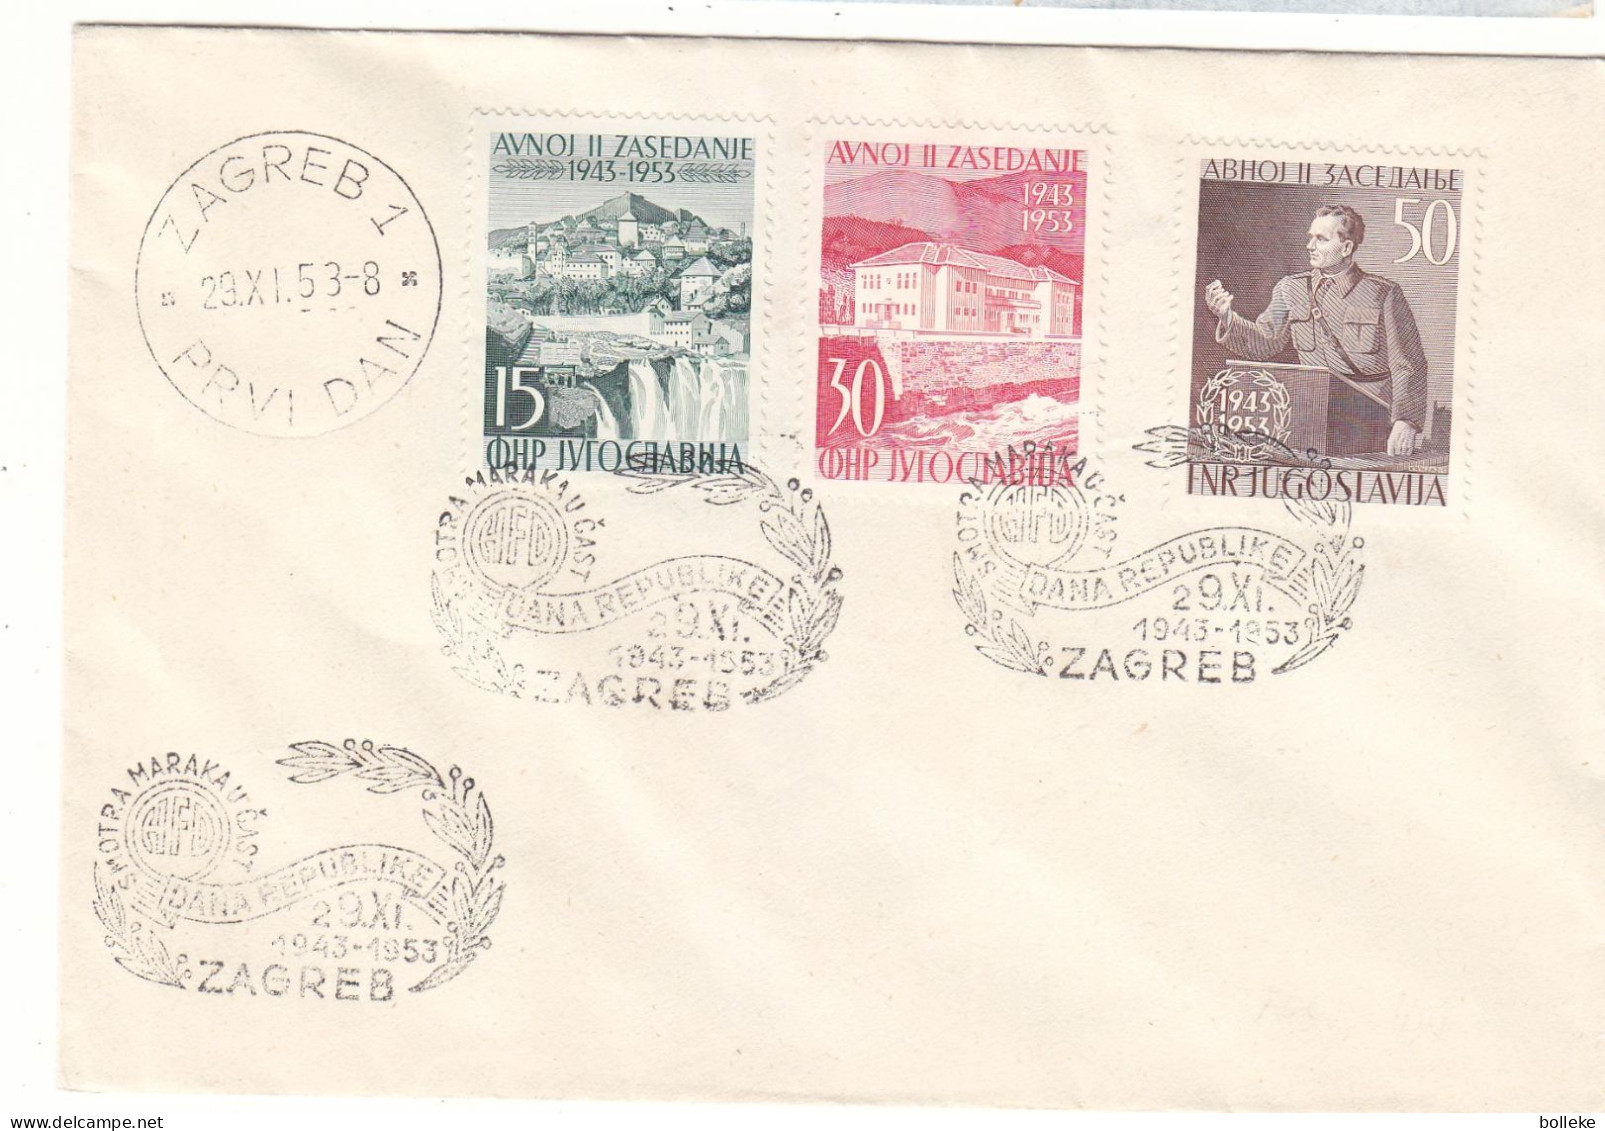 Yougoslavie - Lettre De 1953 - Oblit Zagreb - Tito - Chutes D'eaux - Valeur 60,00 Euros - Covers & Documents